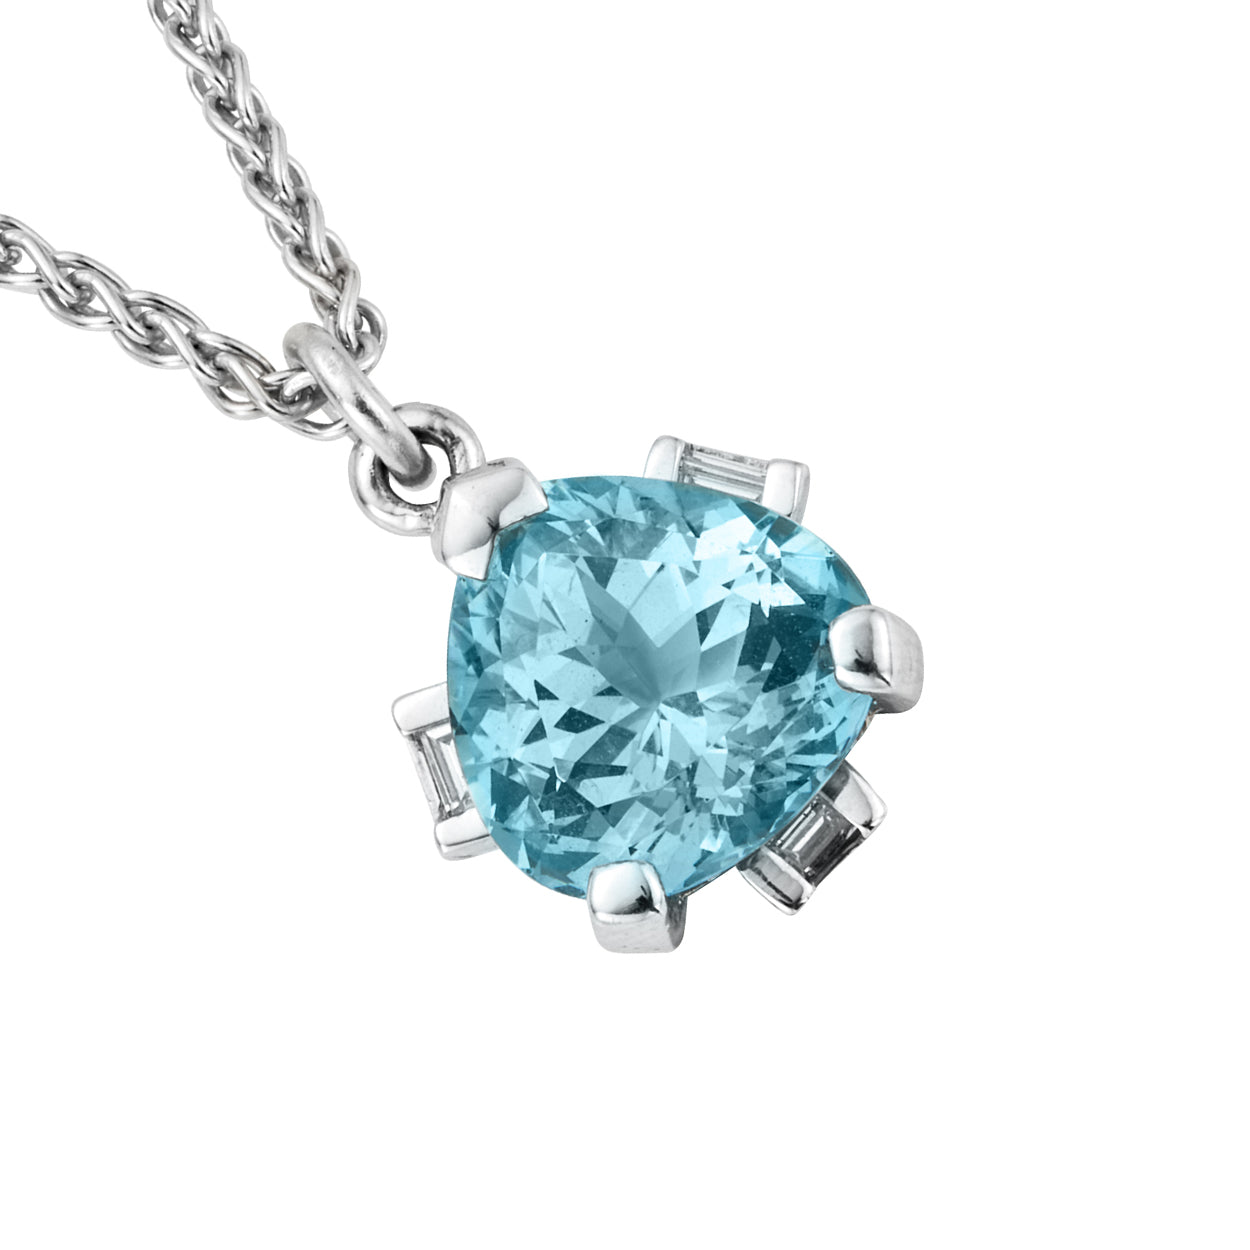 NILAK White Gold Aquamarine & Diamond Necklace